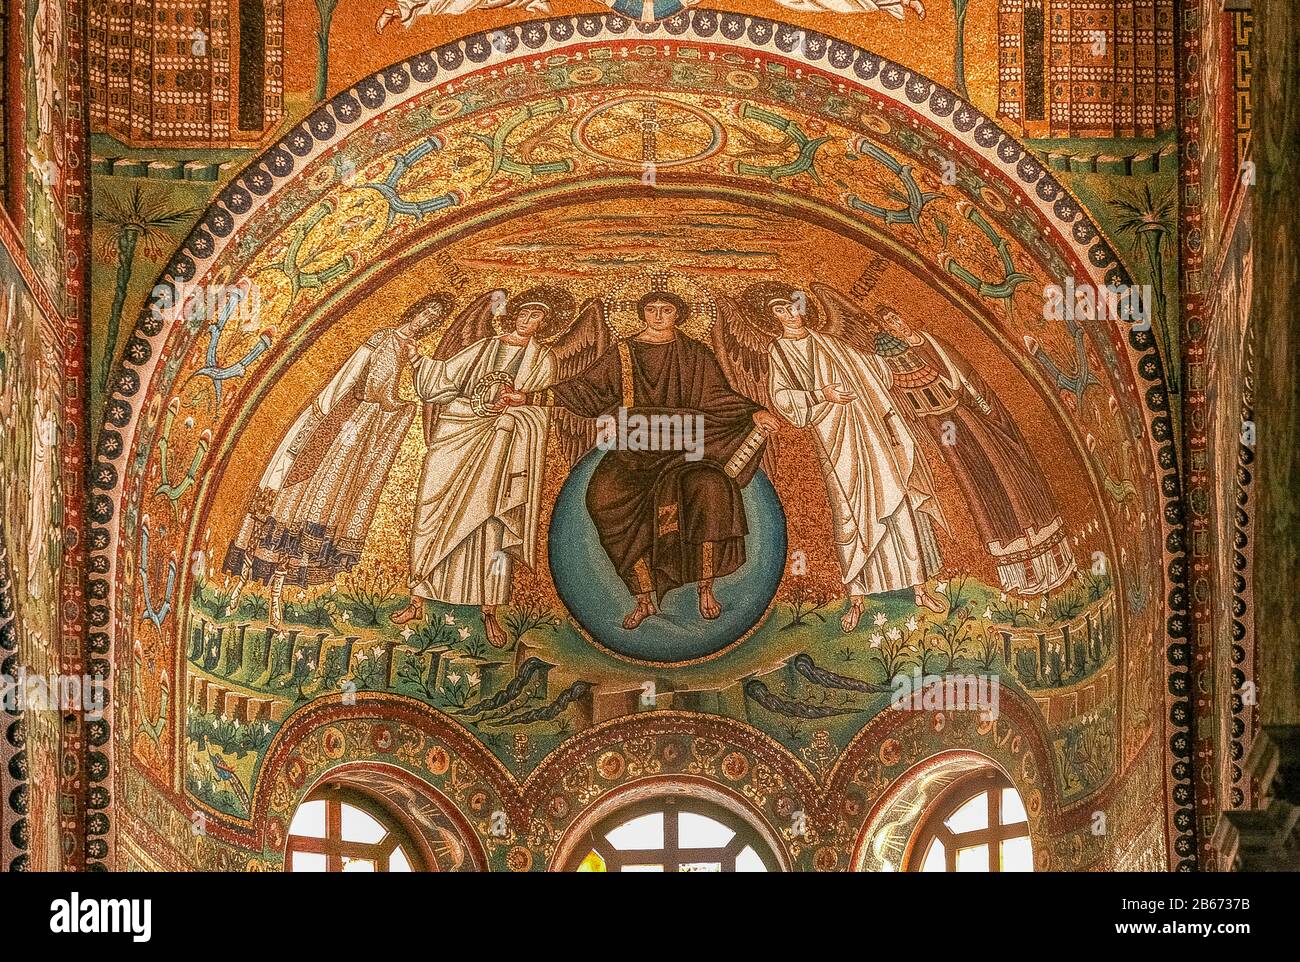 Italien Emilia Romagna Ravenna - Basilika San Vitale - Mosaik Christus Pantokrator, auf einem blauen Globus sitzend, zwischen zwei Erzengeln mit der Schriftrolle von sieben Siegeln in einer Hand, während er mit der anderen die Triumphkrone in San Vitale hält Stockfoto